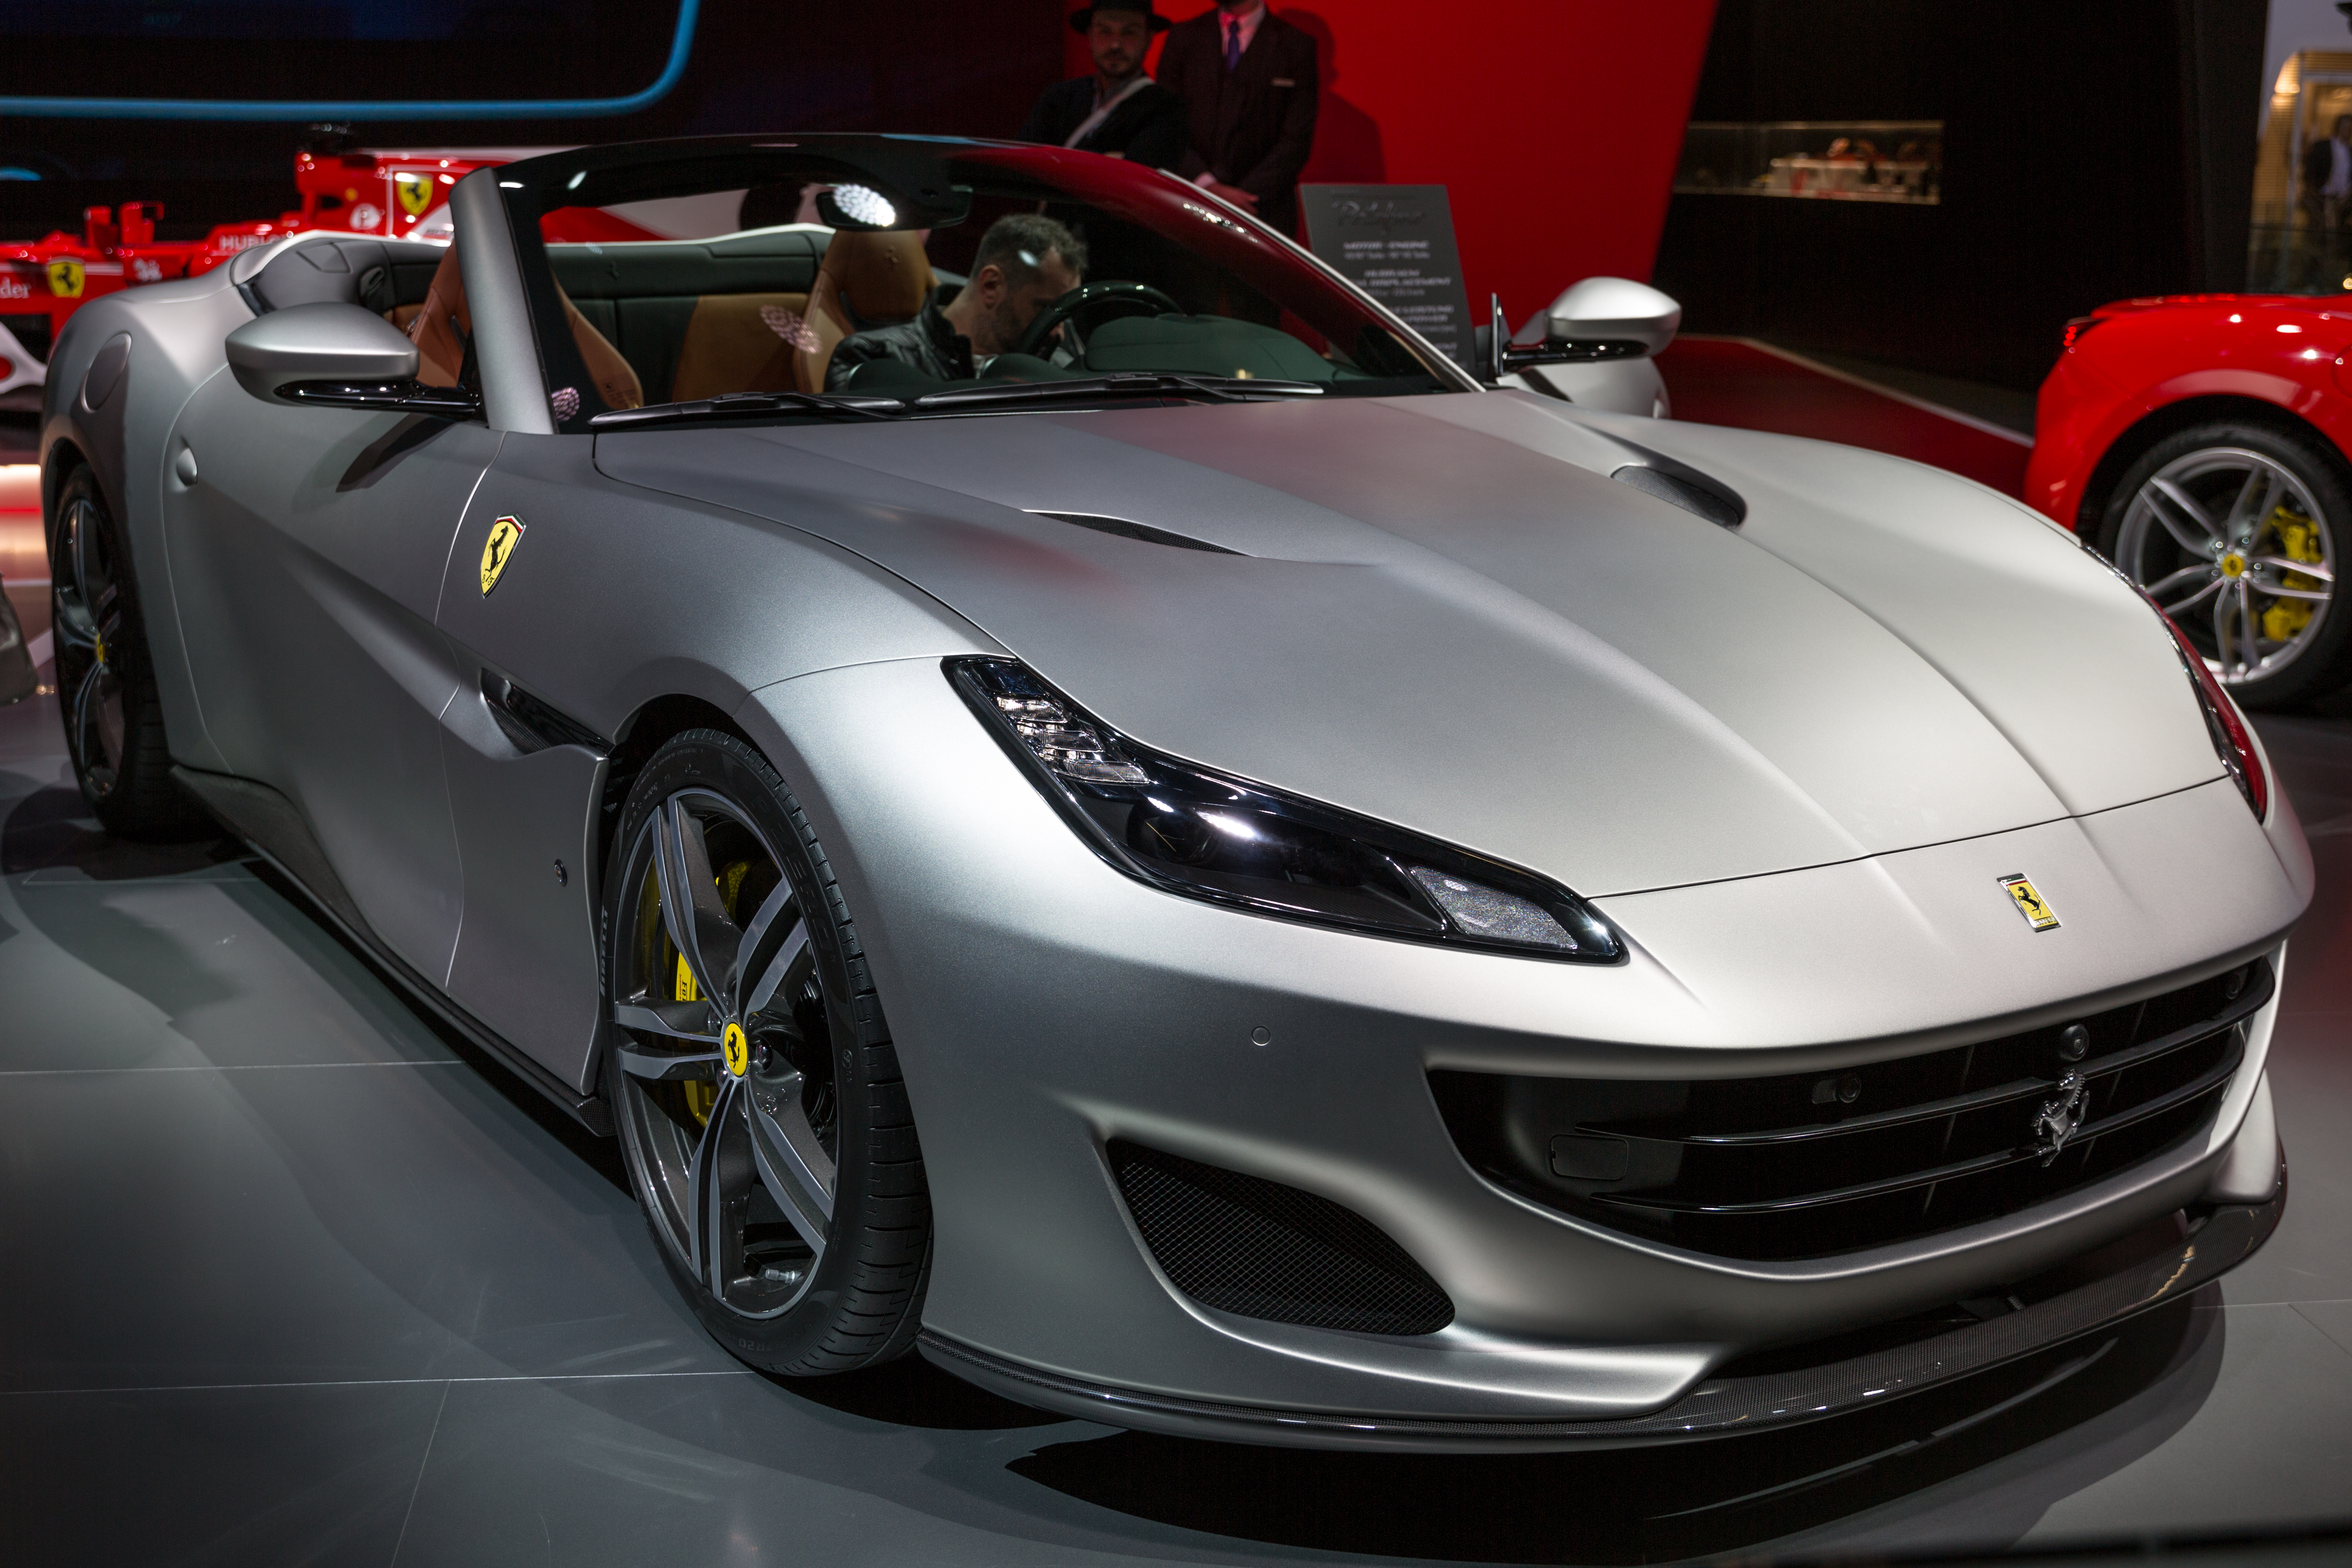 Ferrari Portofino hd specifications